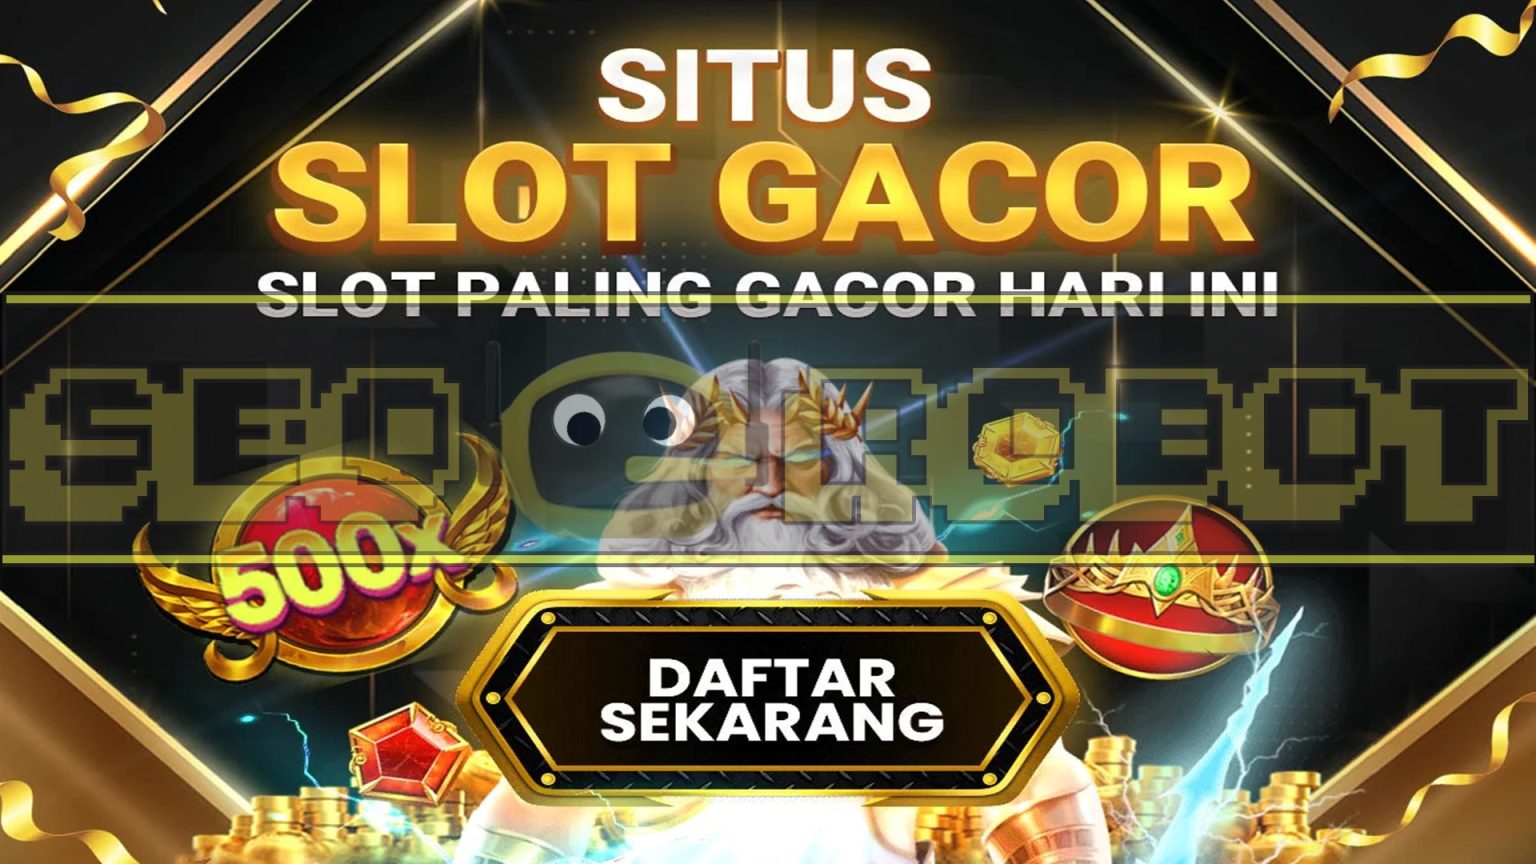 Daftar Slot Gacor Pragmatic Play Gampang Menang Dan Terbaru